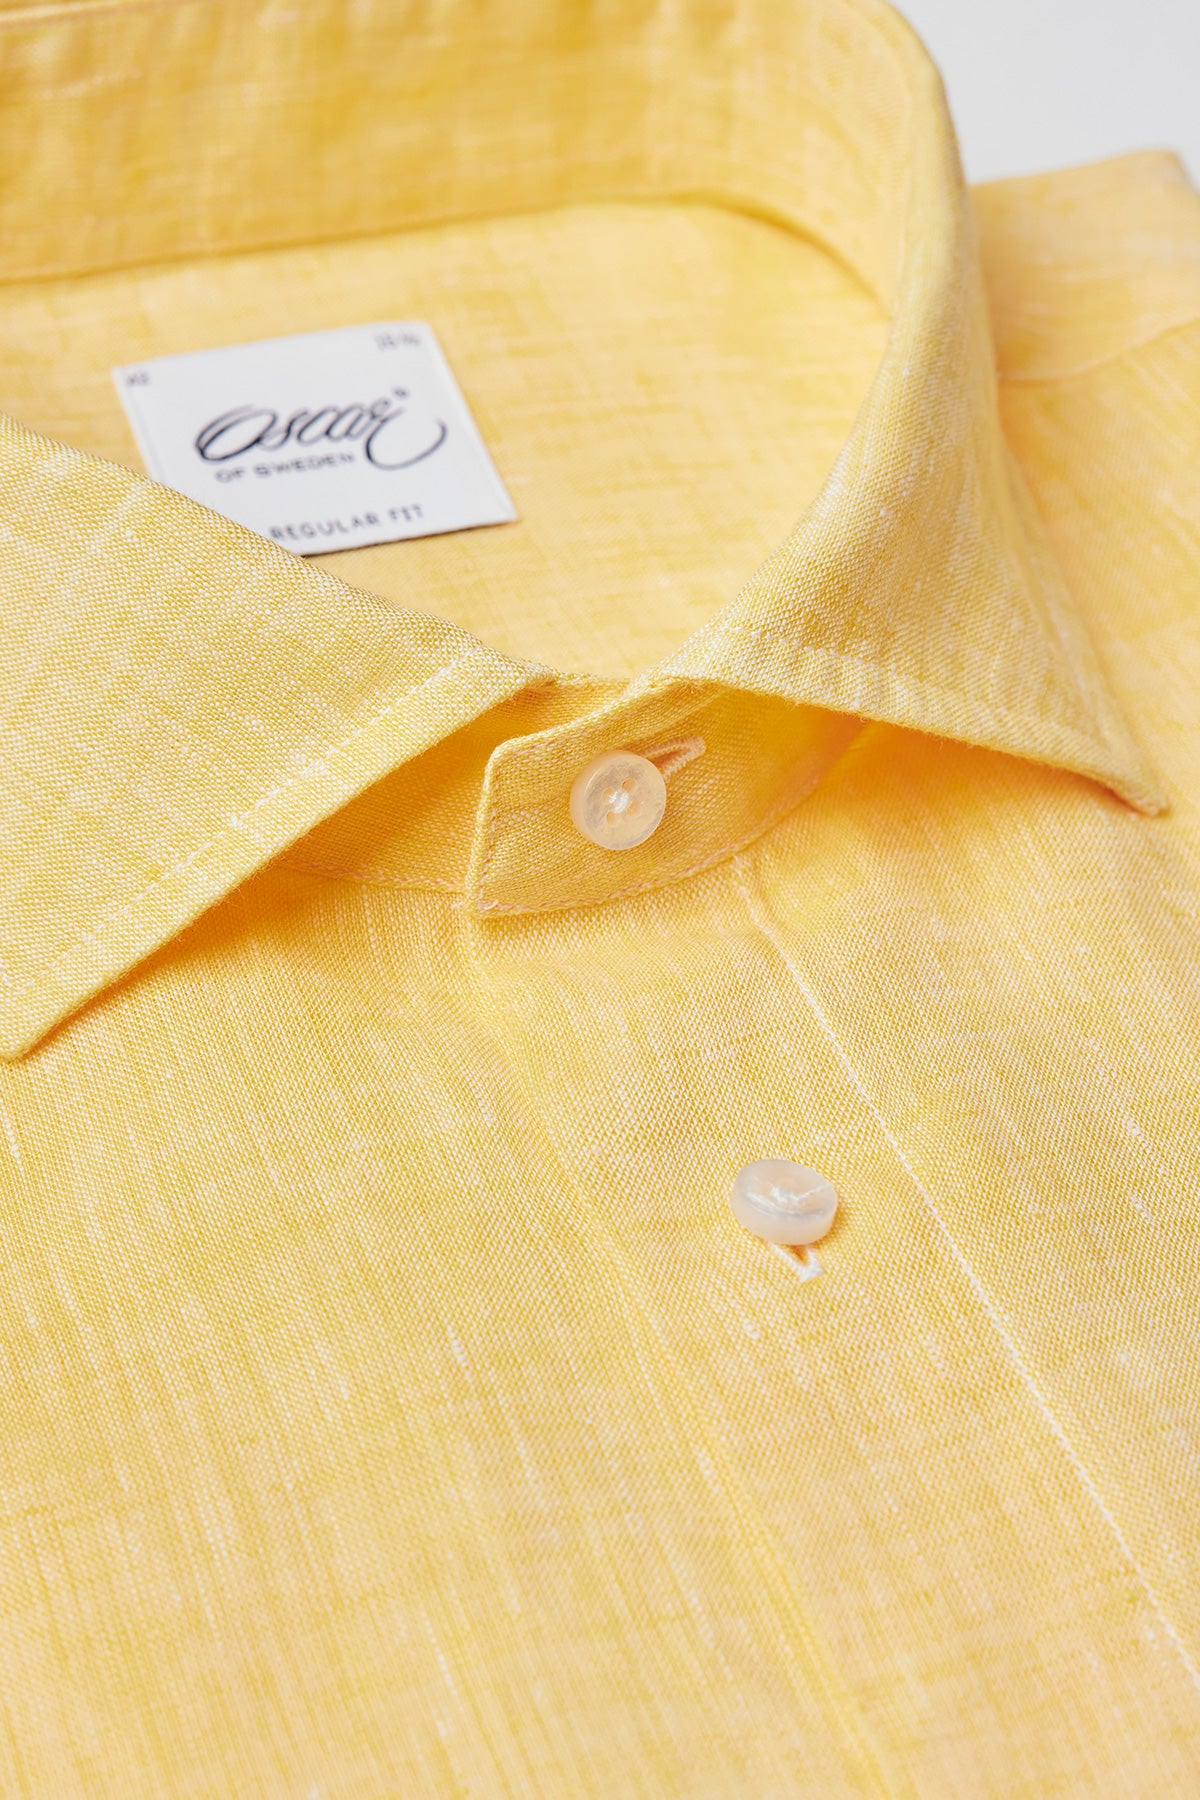 Yellow regular fit linen shirt